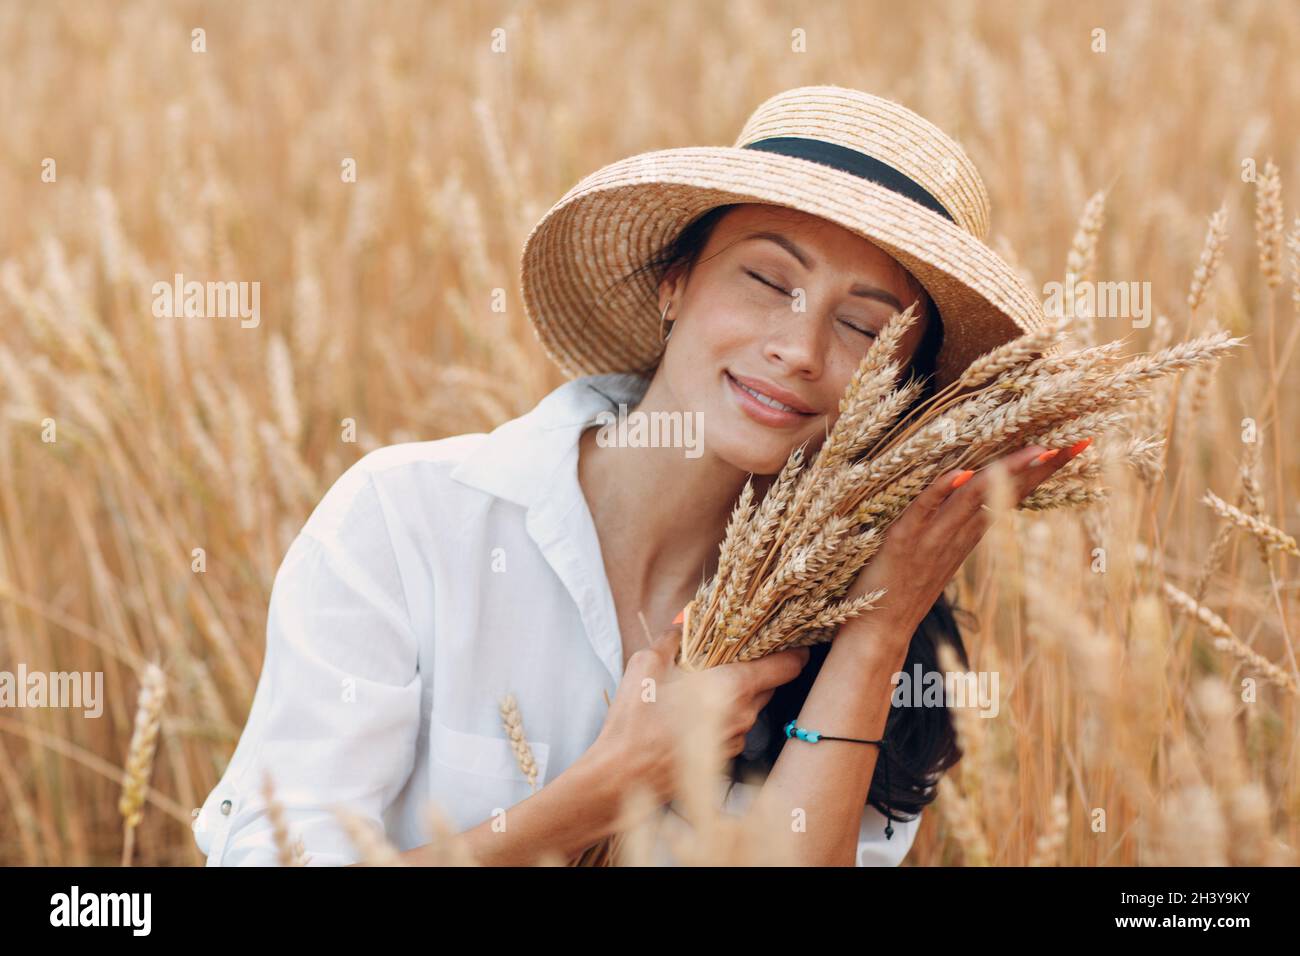 Jeune femme en chapeau de paille tenant une feuille d'épis de blé au champ agricole Banque D'Images